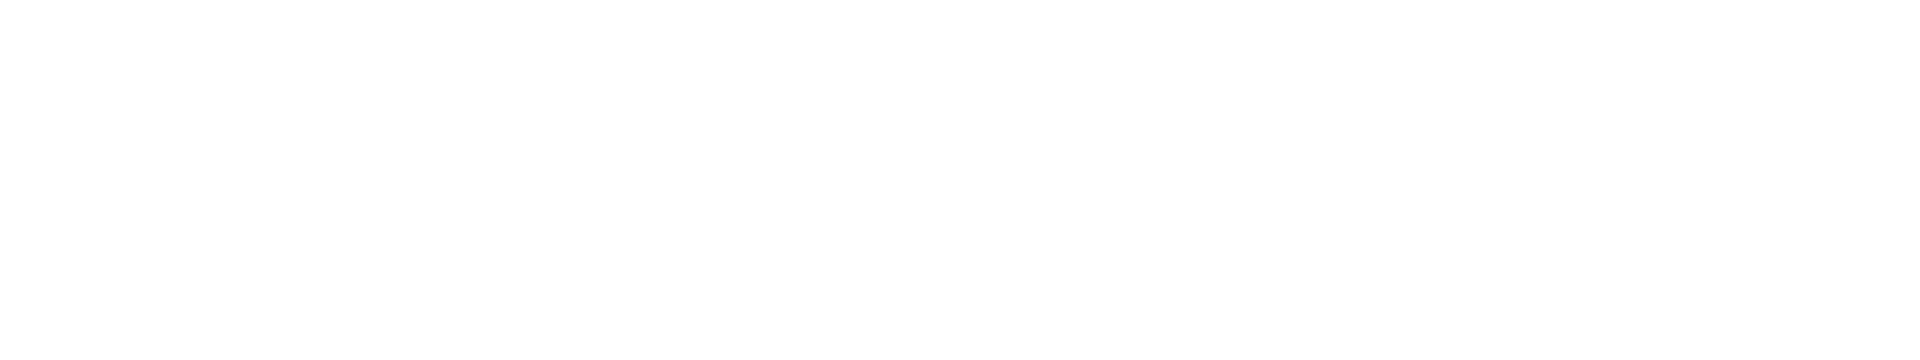 Masterclass experts banner